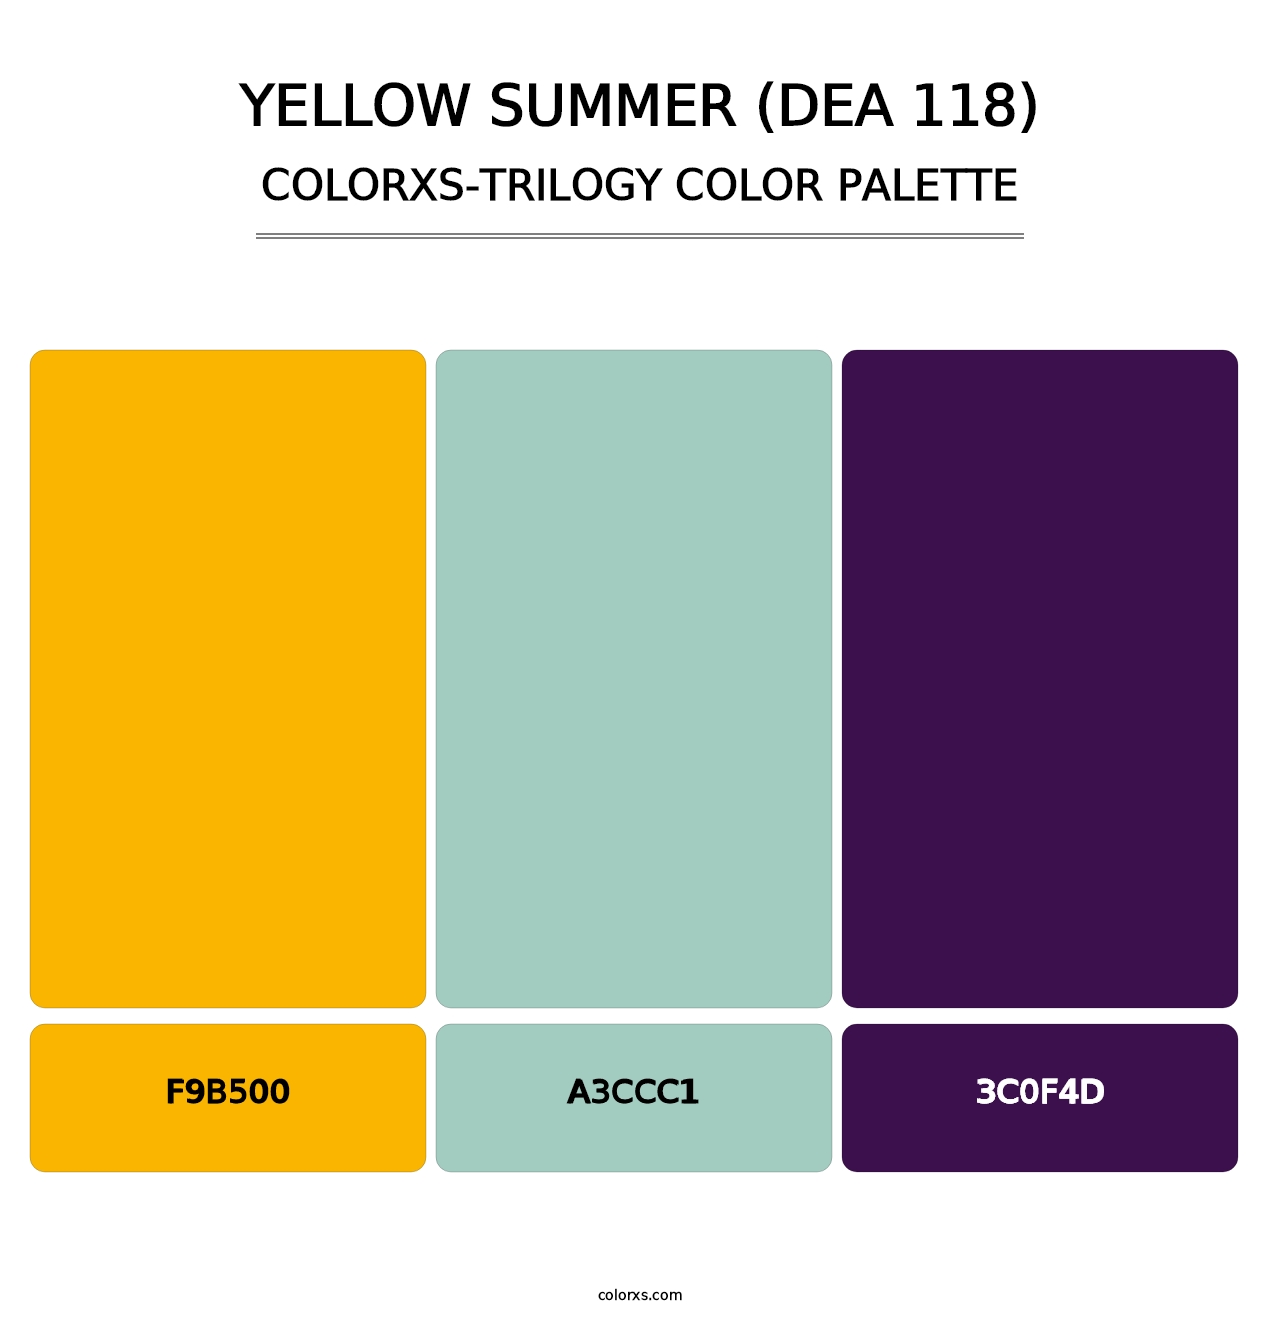 Yellow Summer (DEA 118) - Colorxs Trilogy Palette